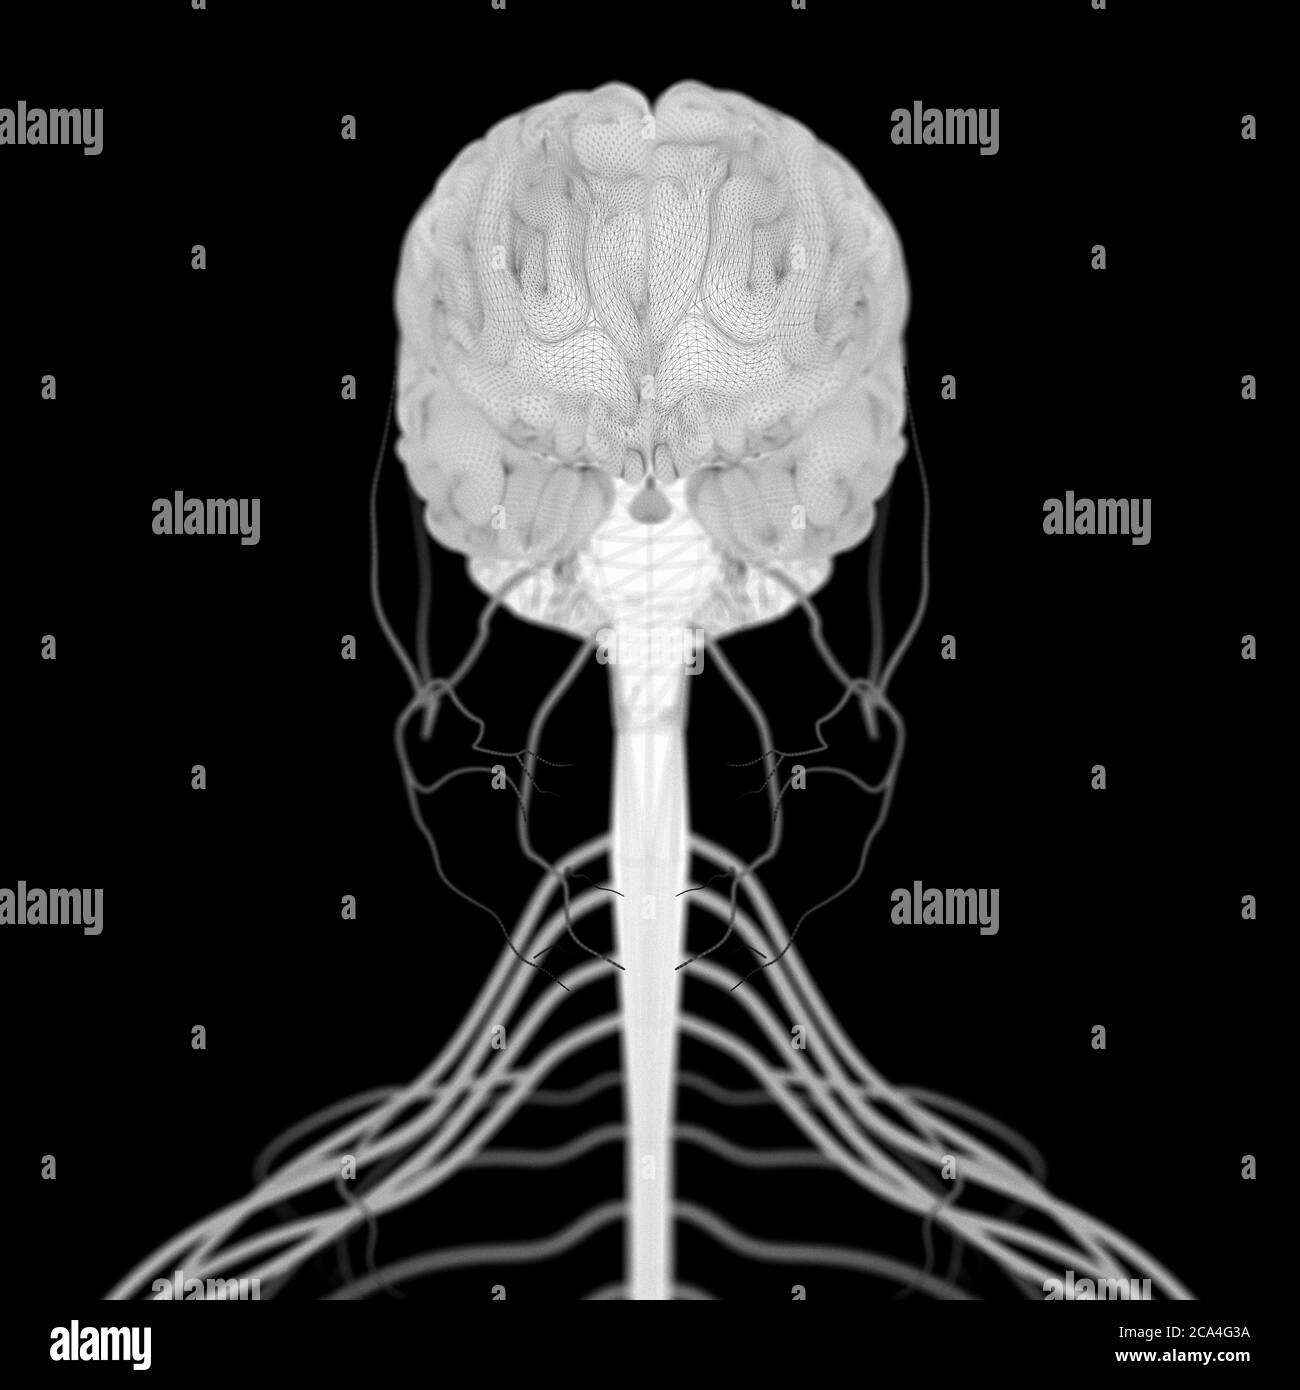 Illustration anatomique du cerveau humain et de la tige isolée, illustration 3d Banque D'Images